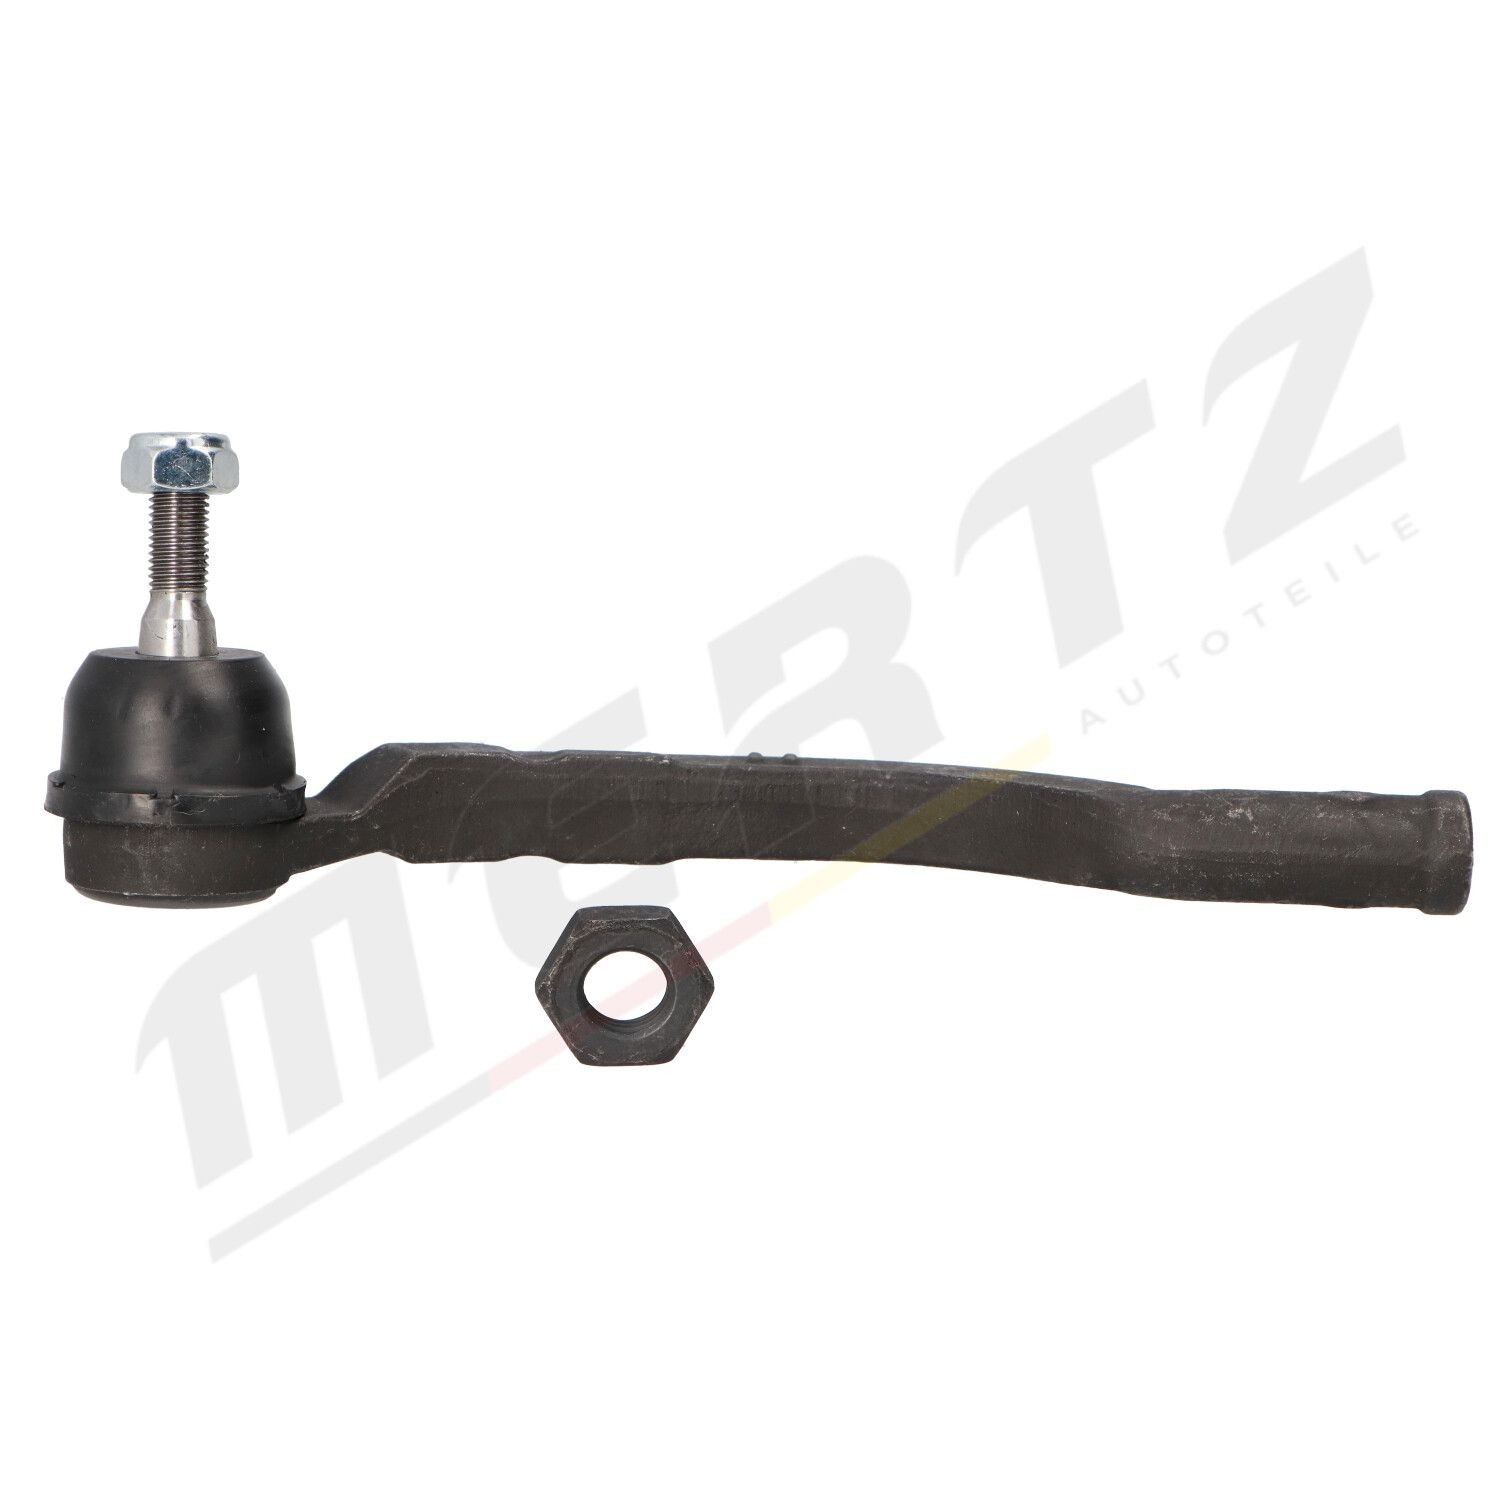 MERTZ M-S0337 Control arm repair kit 4852 027 14R